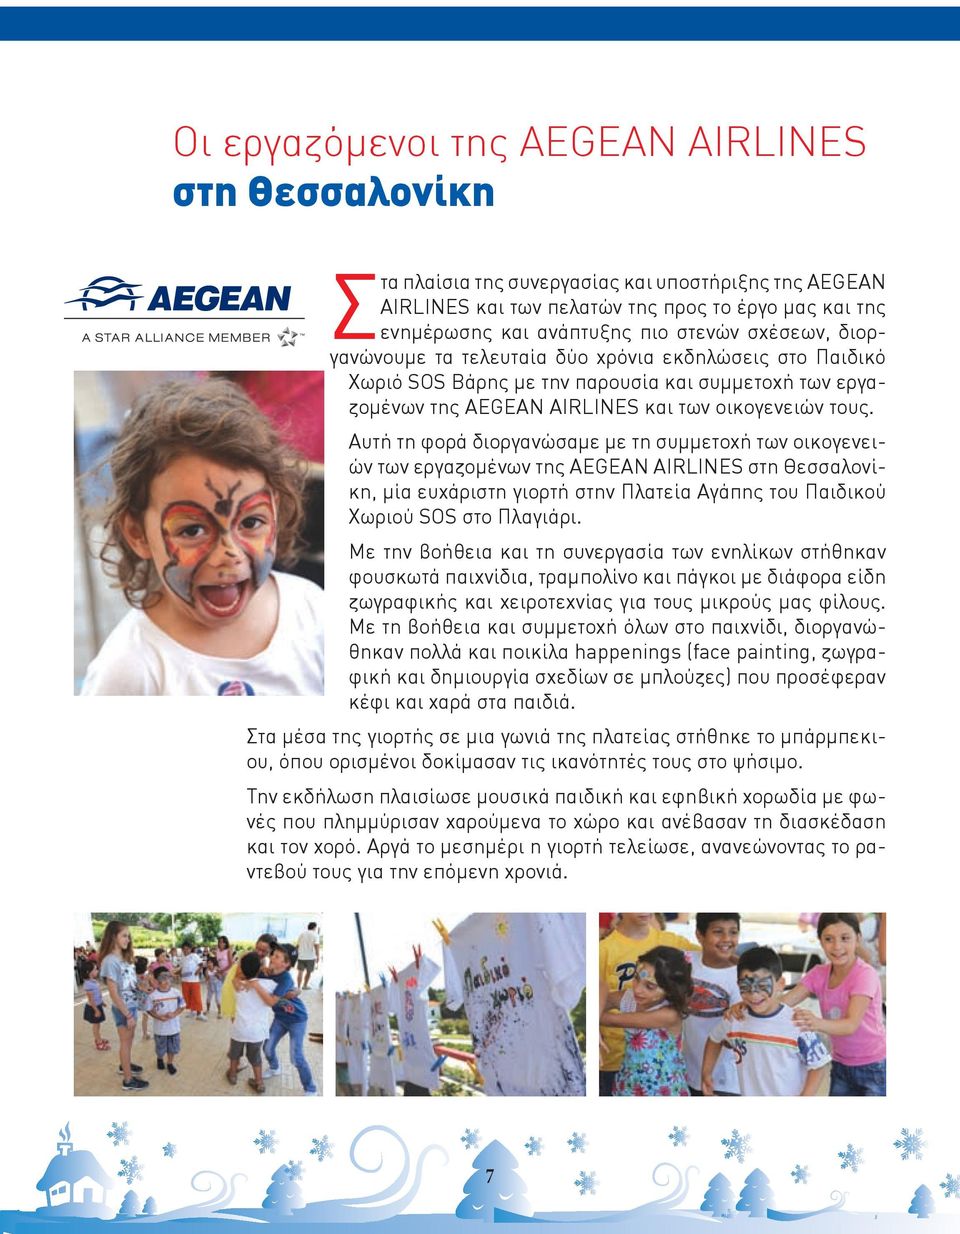 Αυτή τη φορά διοργανώσαμε με τη συμμετοχή των οικογενειών των εργαζομένων της AEGEAN AIRLINES στη Θεσσαλονίκη, μία ευχάριστη γιορτή στην Πλατεία Αγάπης του Παιδικού Χωριού SOS στο Πλαγιάρι.